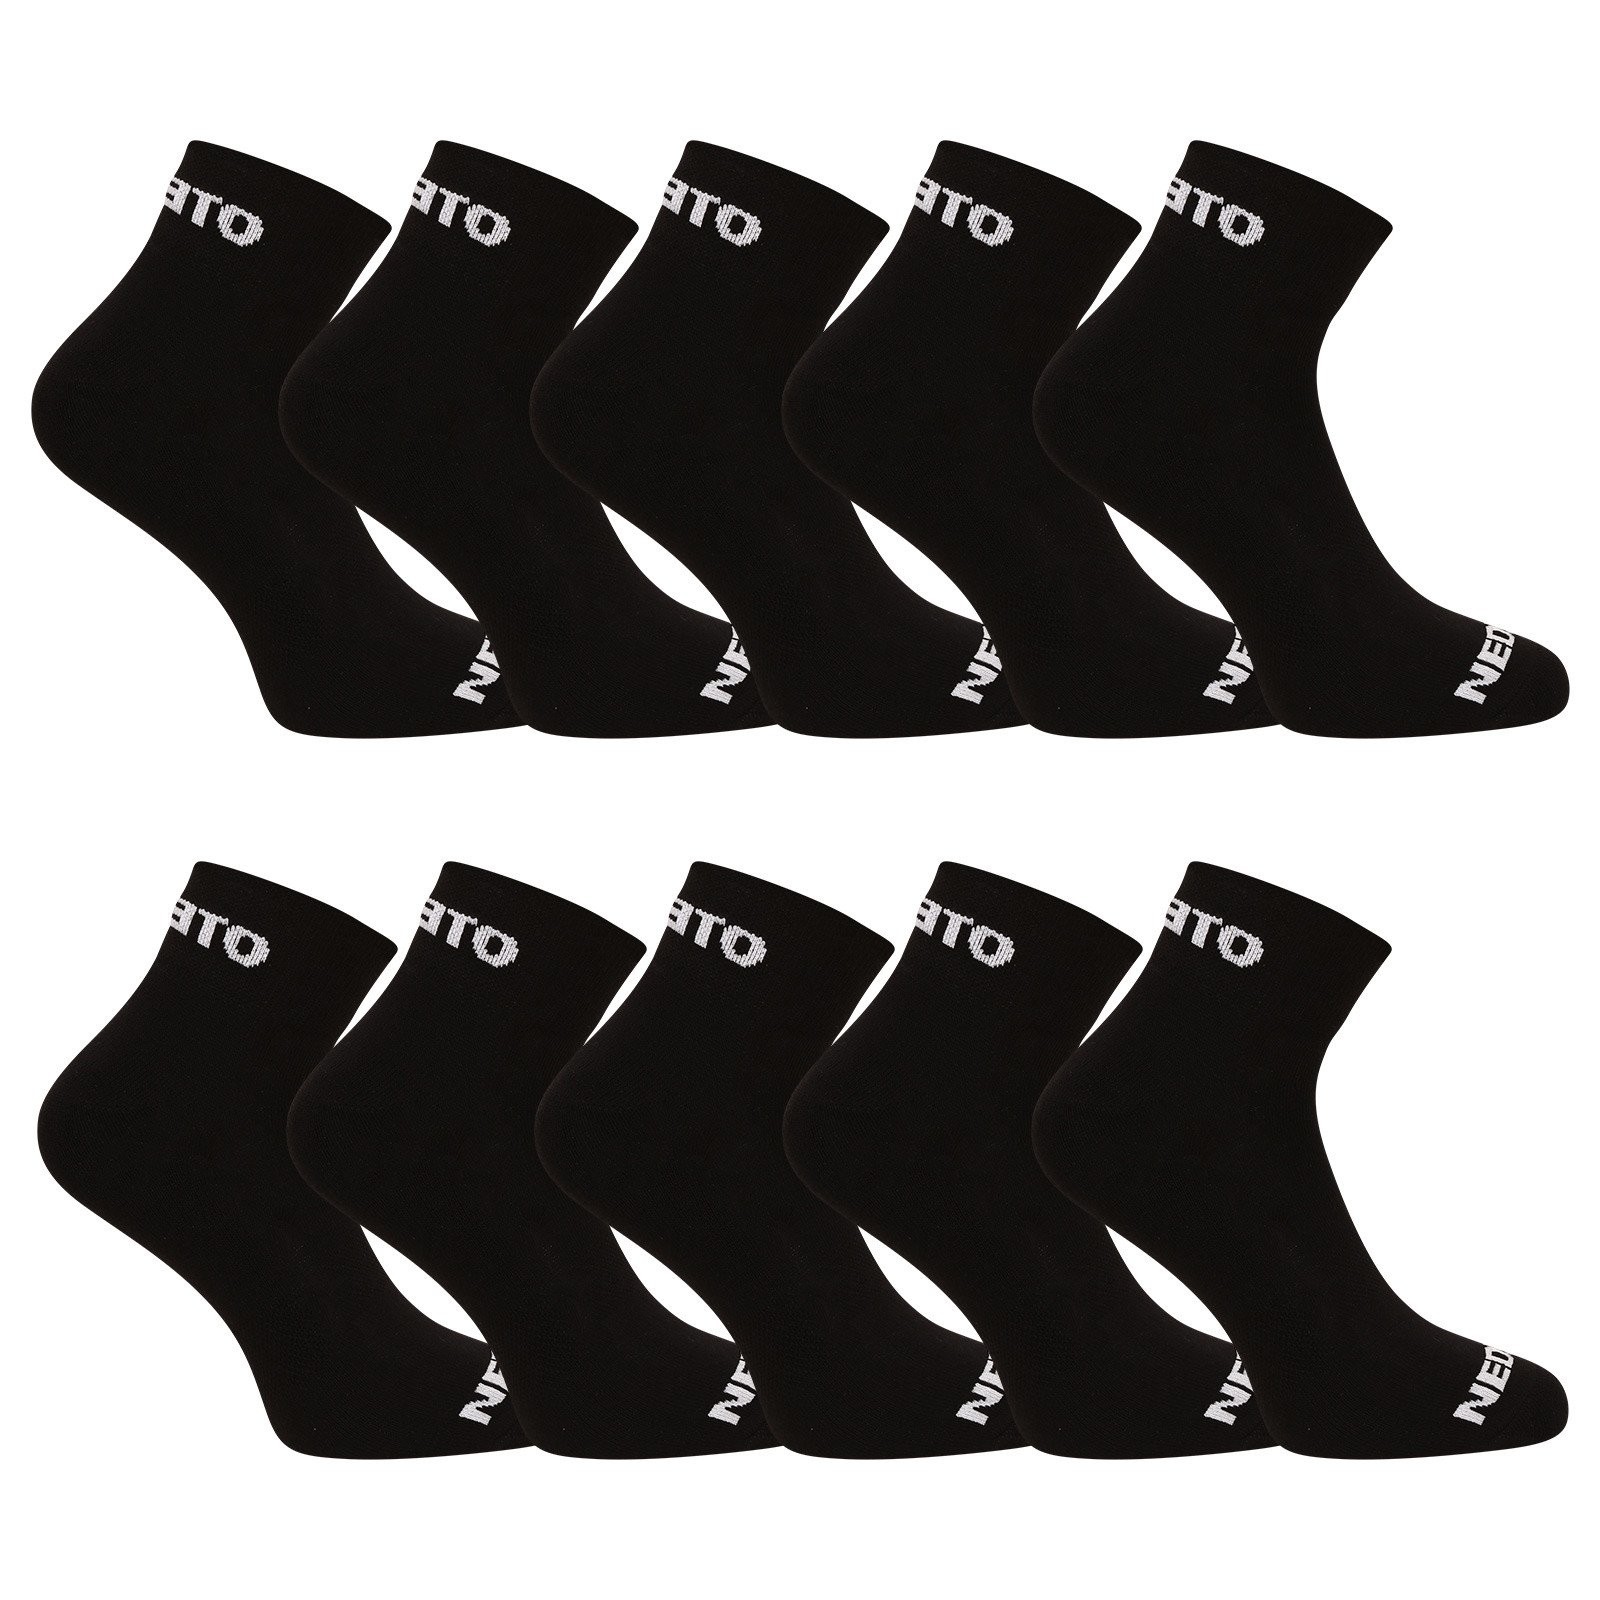 10PACK ponožky Nedeto kotníkové černé